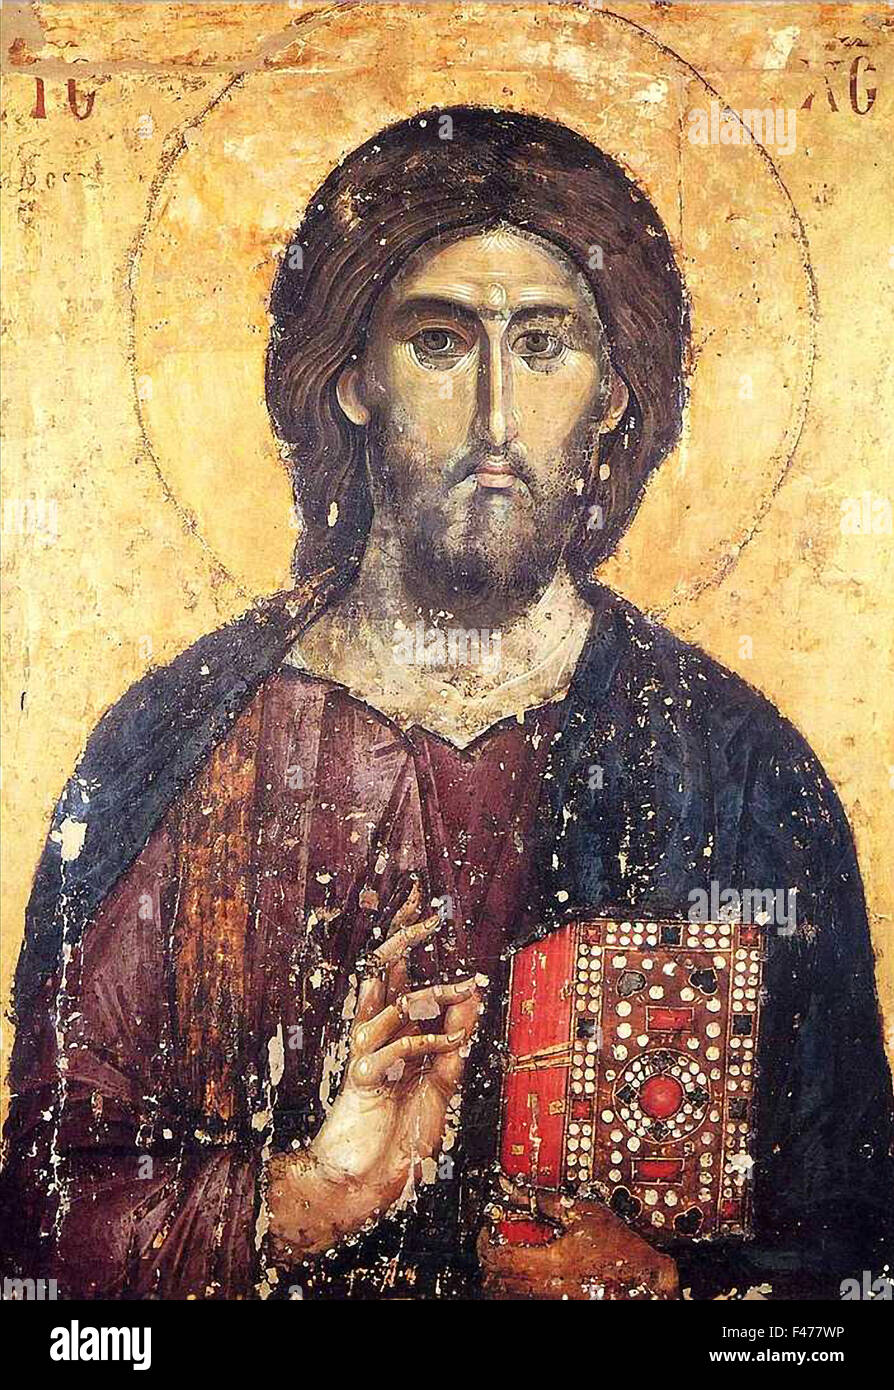 5778. Pintura de Jesucristo dating c. 13th. C ubicado en un monasterio en Serbia (Yugoslavia). Foto de stock